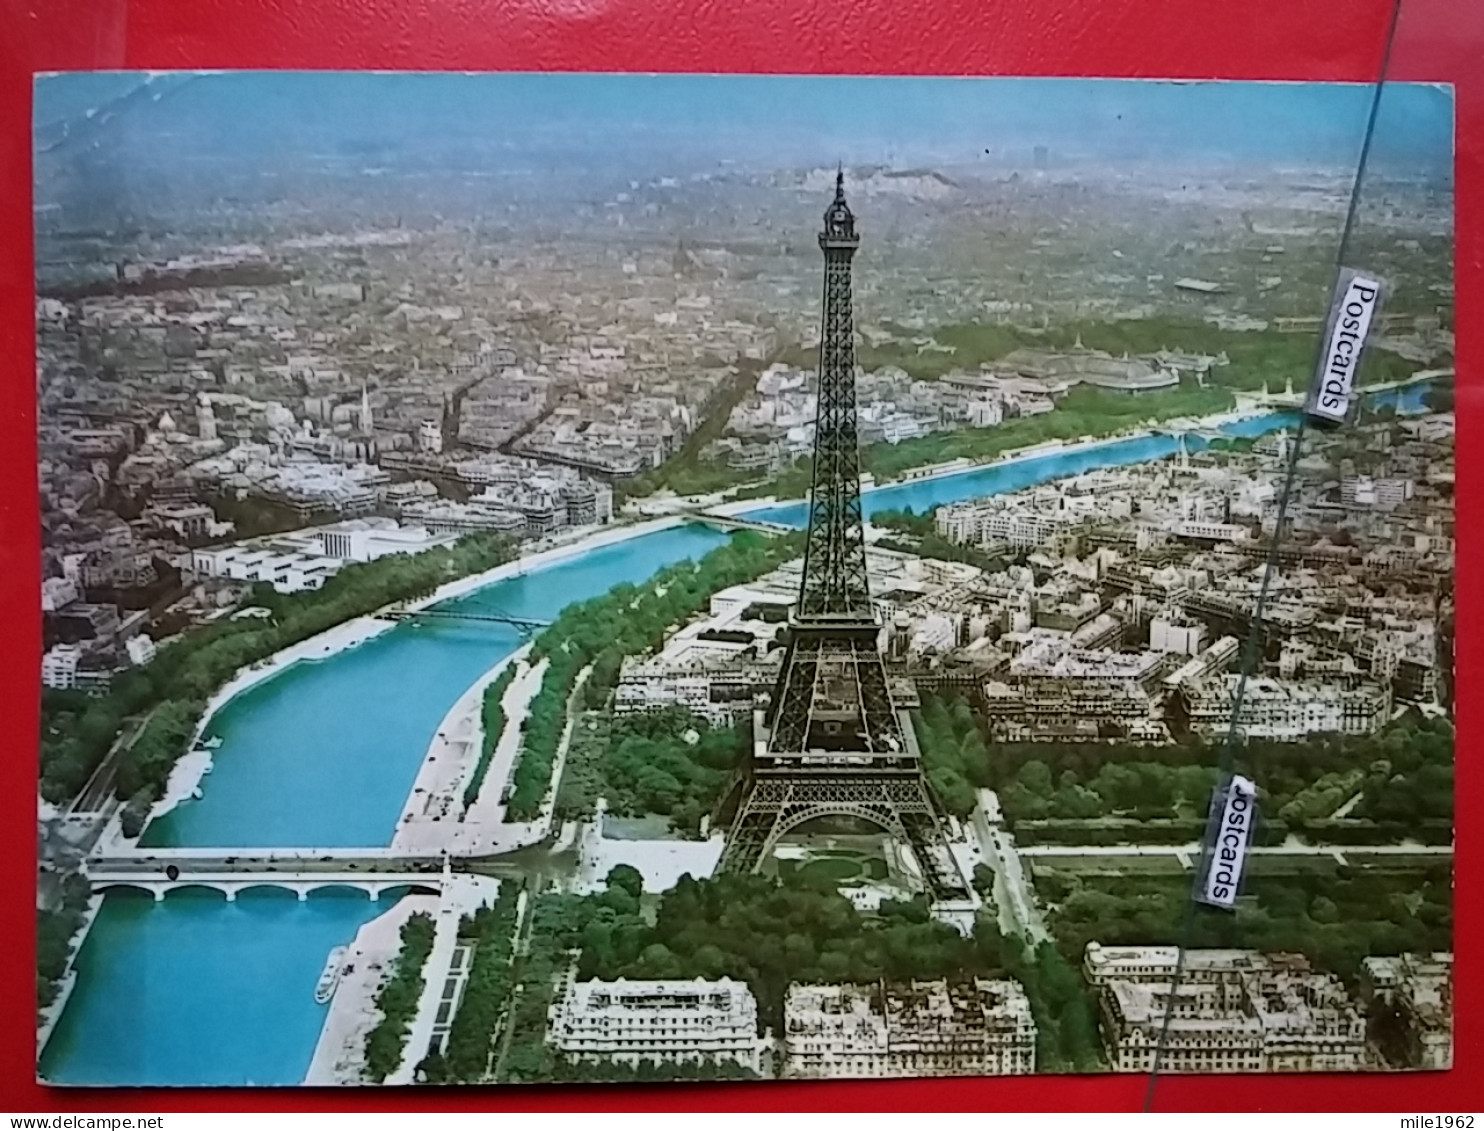 KOV 11-67 - PARIS, Tour Eiffel, - Tour Eiffel